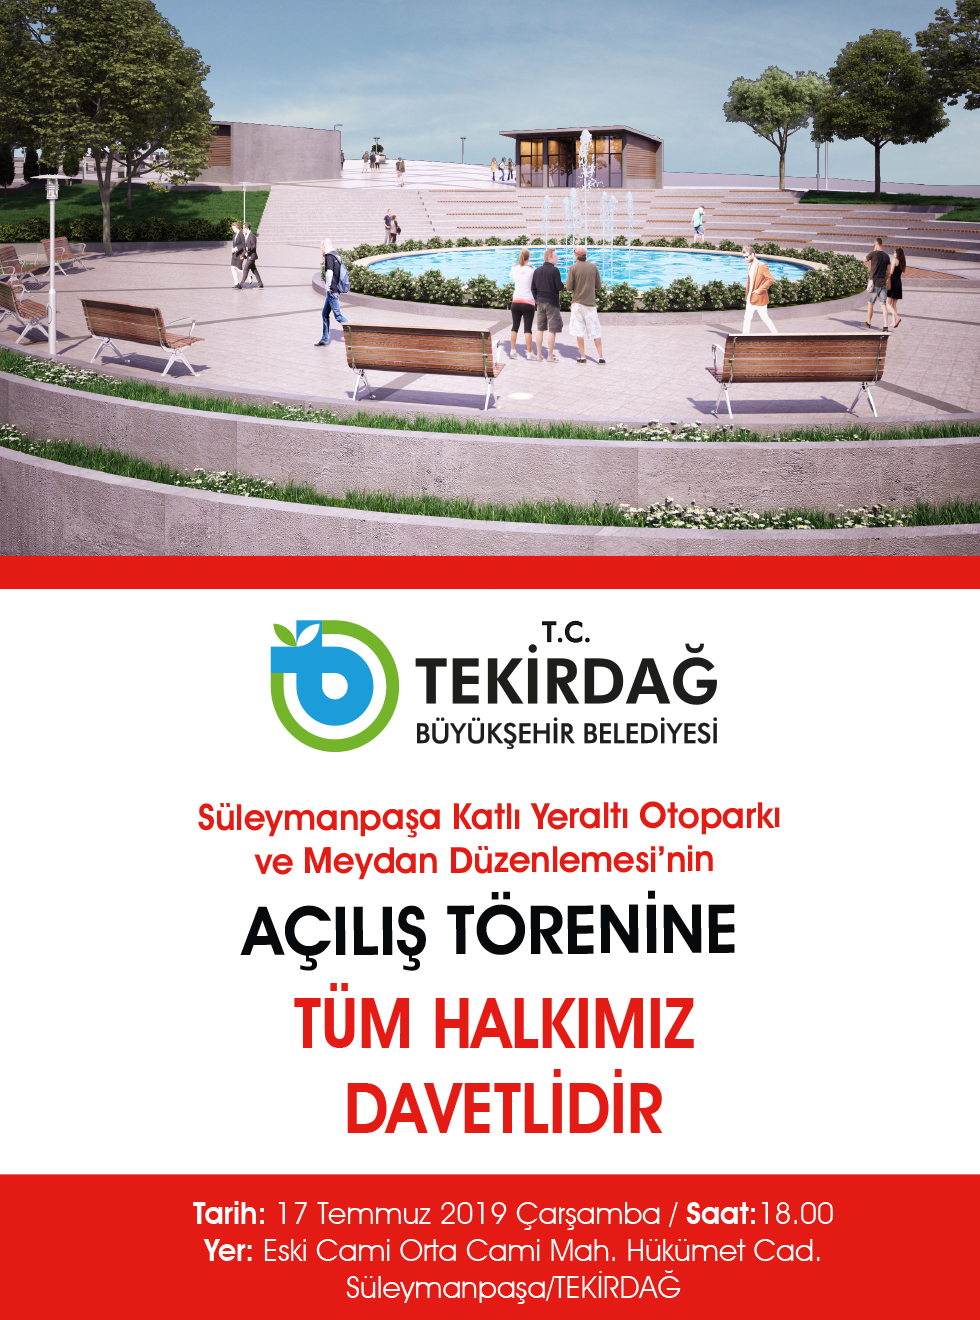 Süleymanpaşa Katlı Yeraltı Otoparkı  ve Meydan Düzenlemesinin  açılış töreni